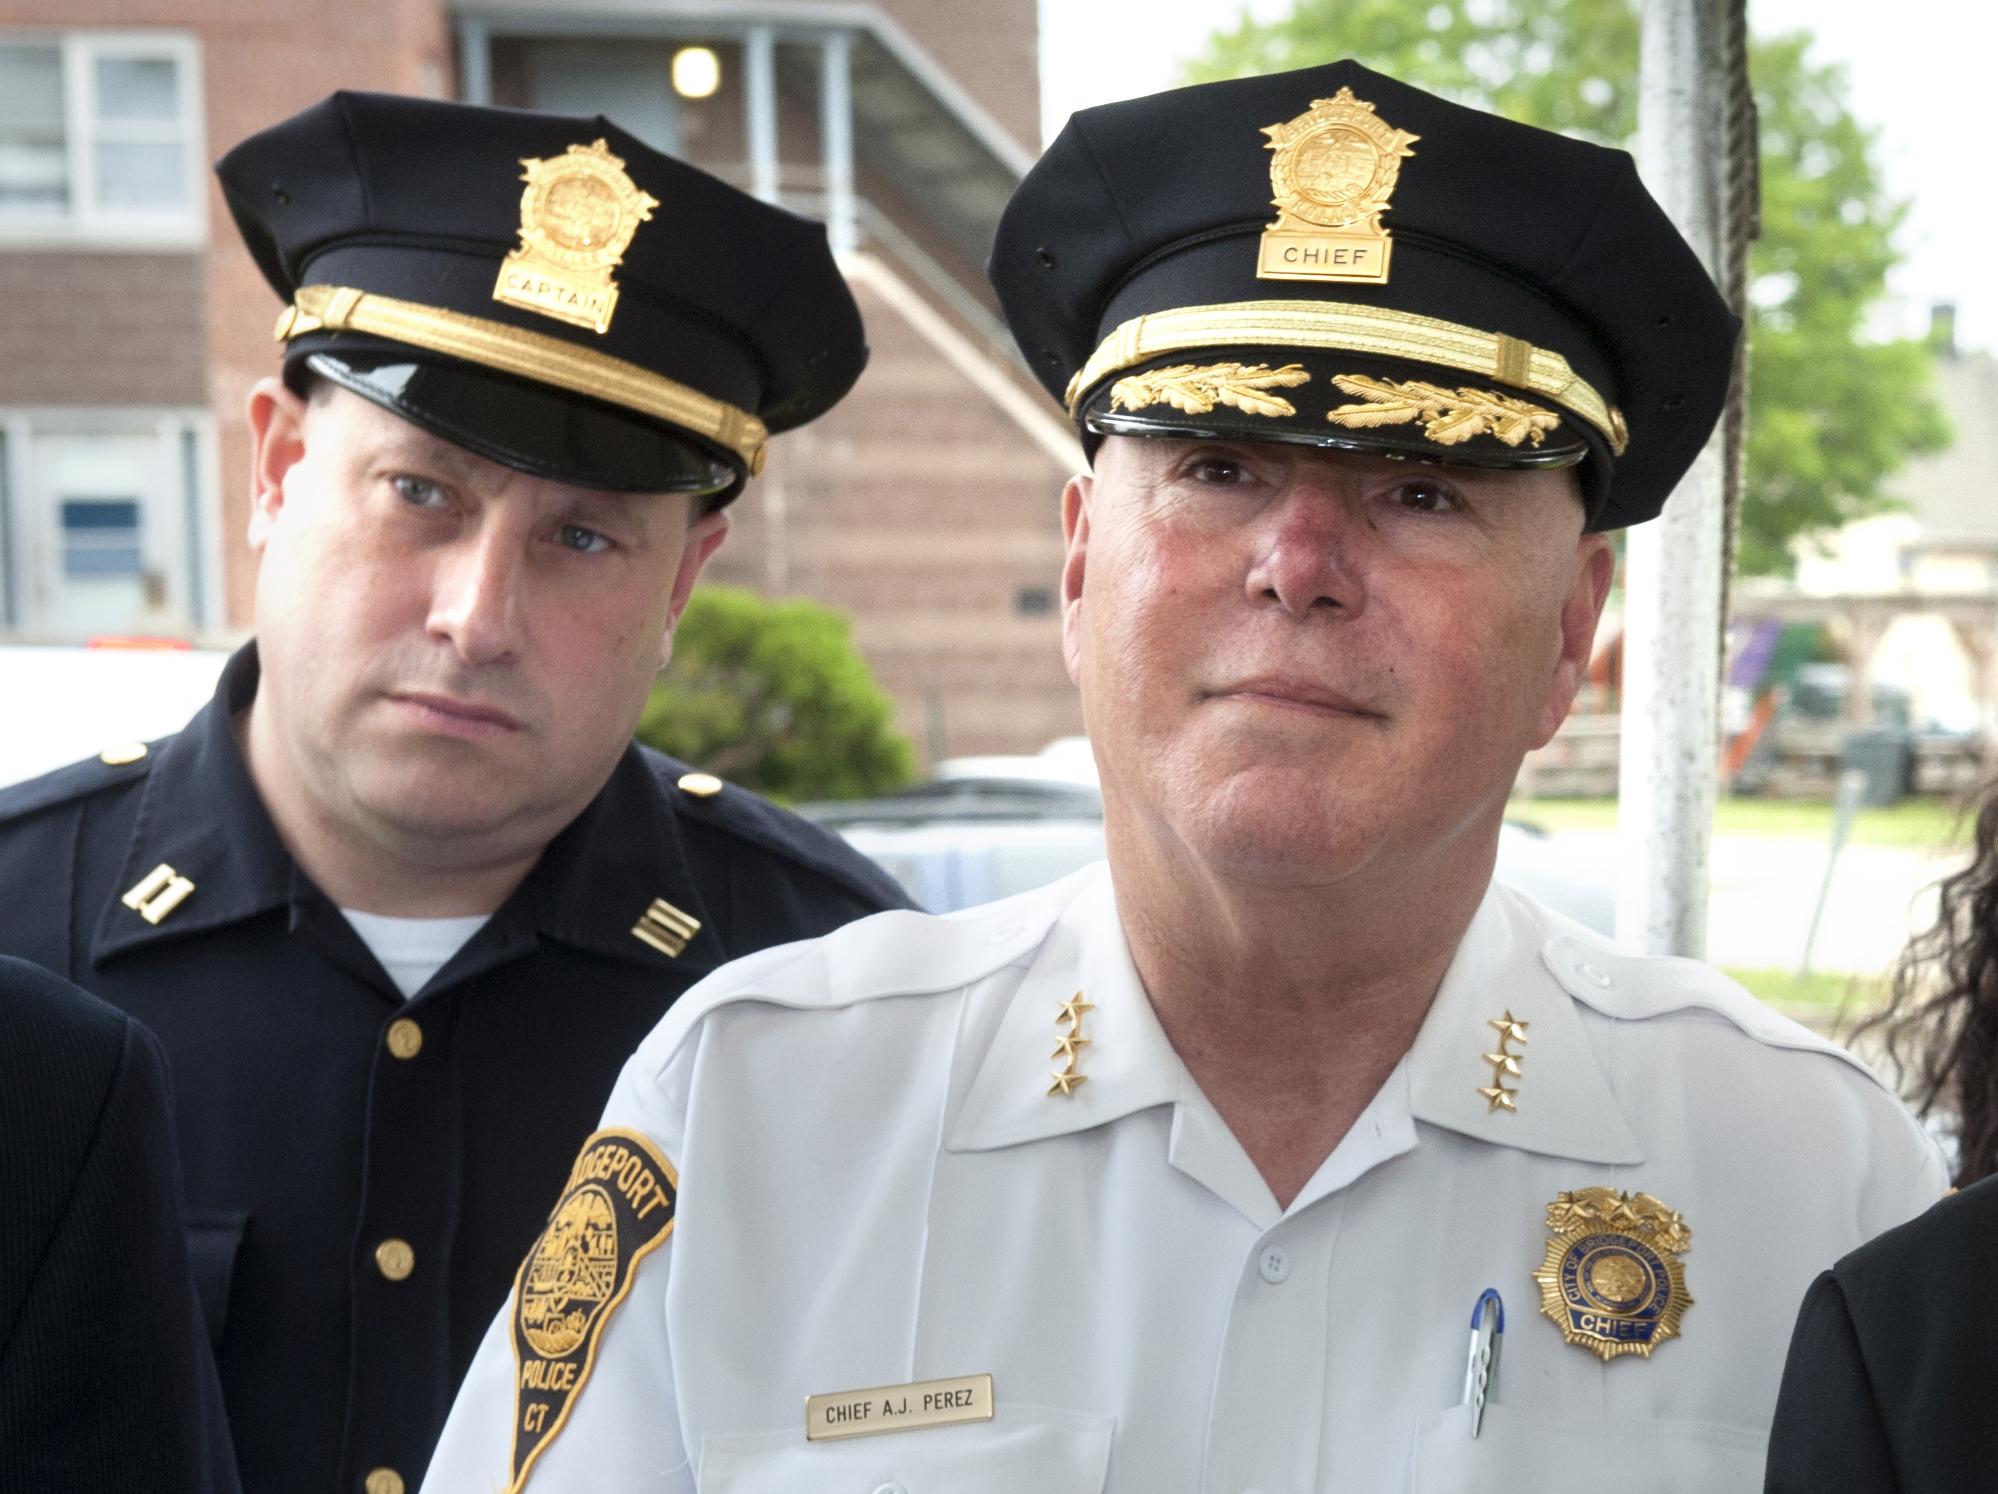 Questions arise over handling of Bridgeport cop’s alleged racism